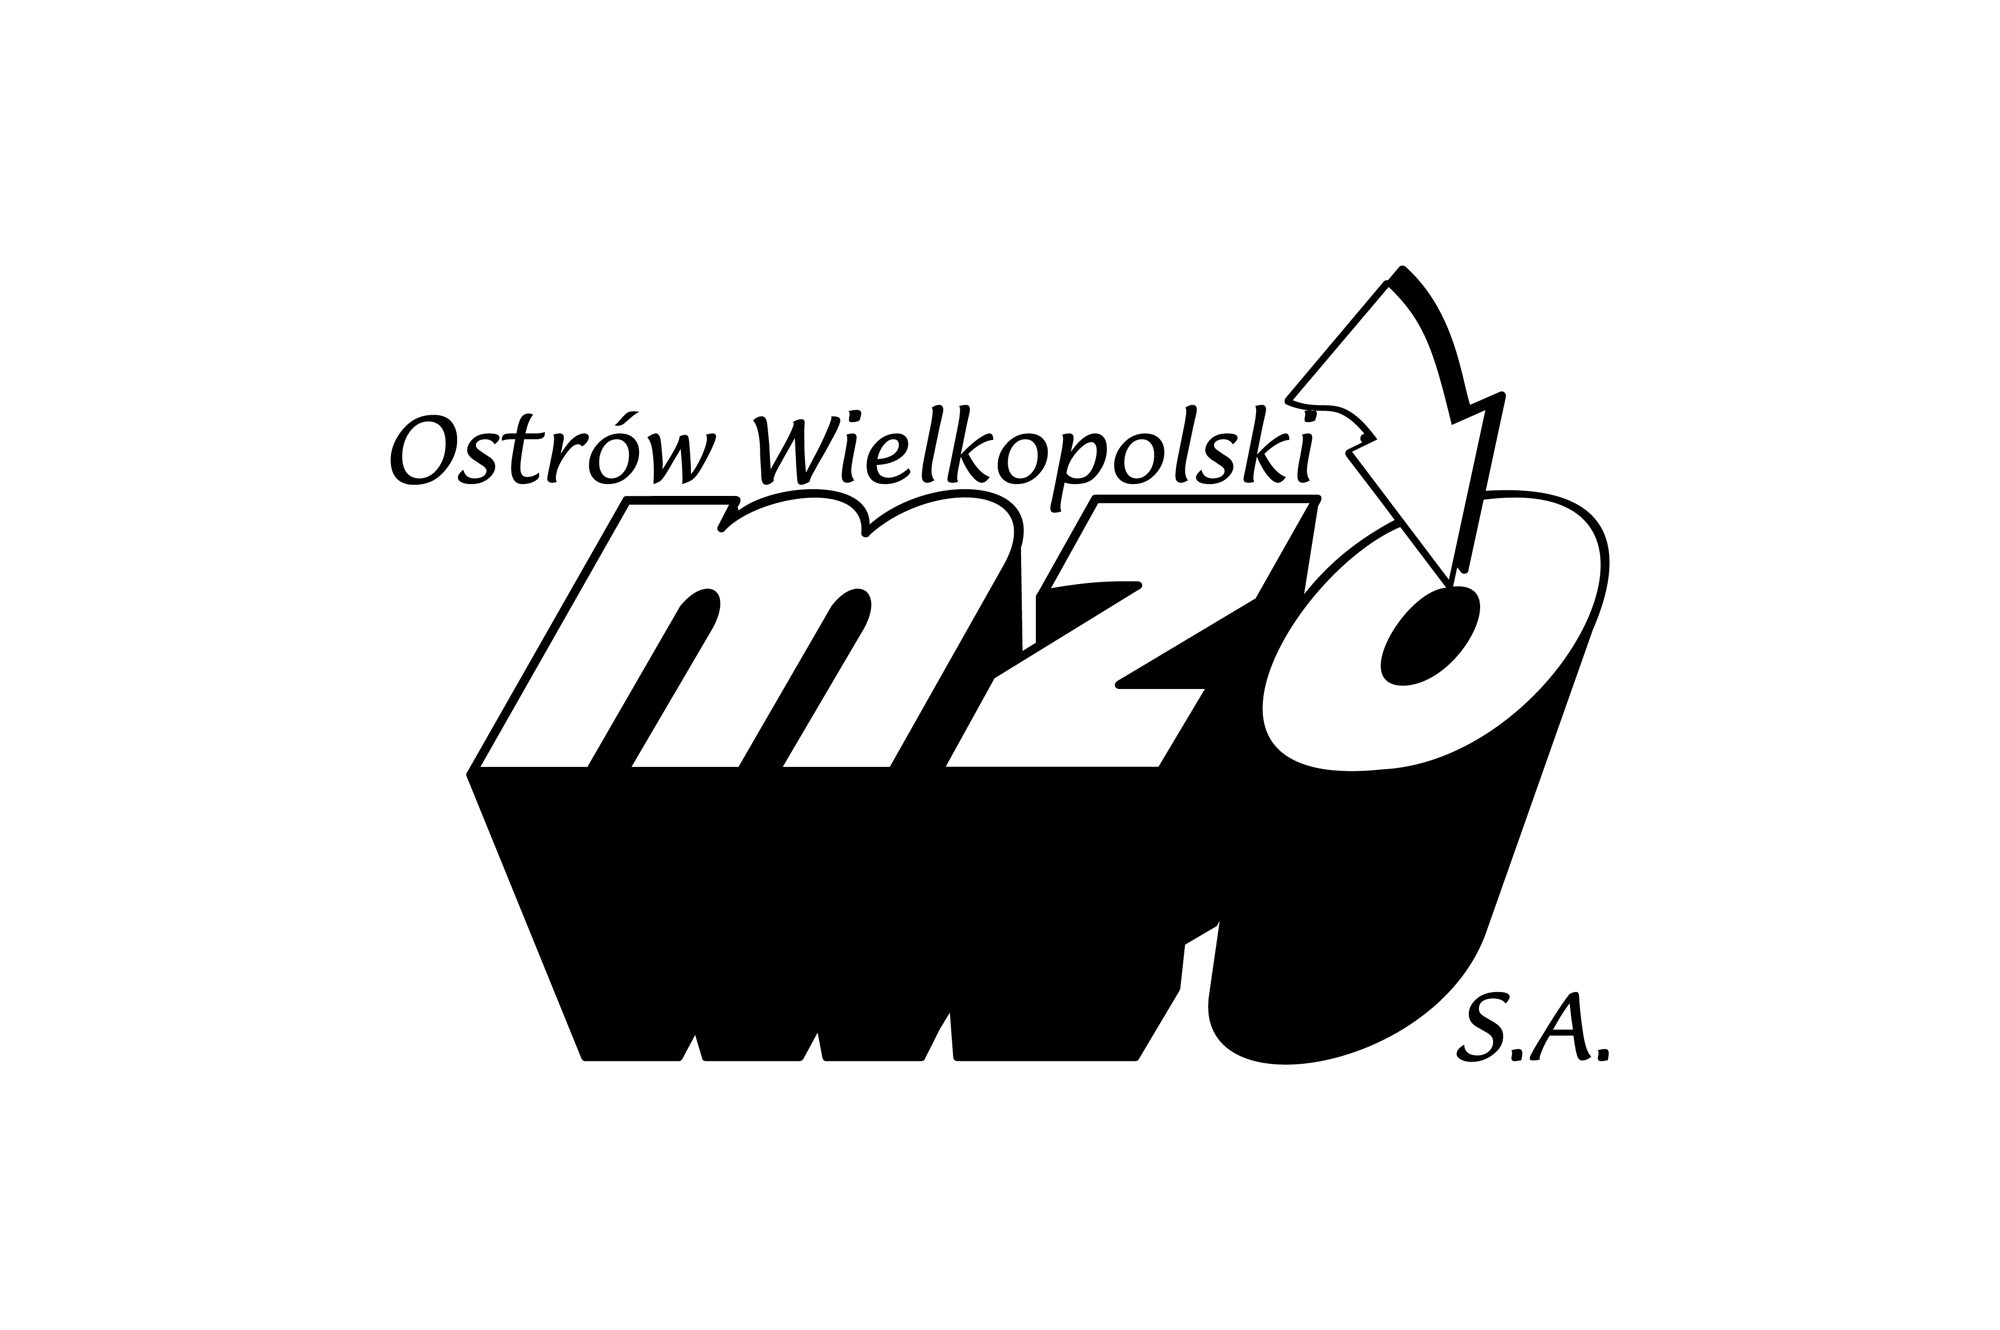 MZO - logo PLANSZA 30x30cm EDYCJA